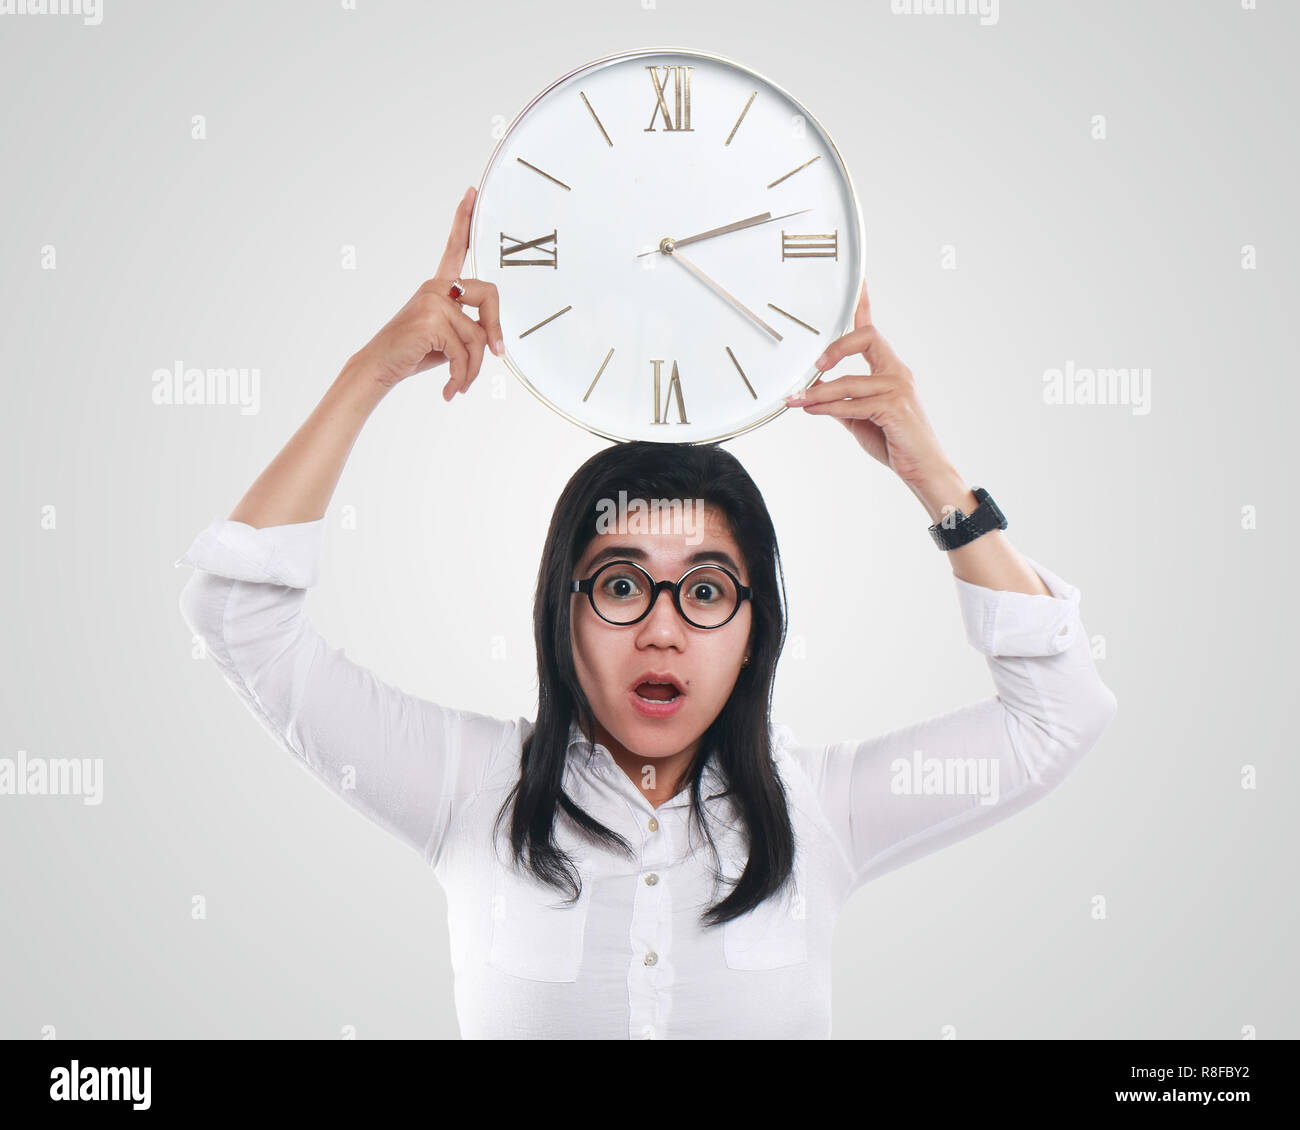 Foto immagine ritratto di una giovane e bella Asian imprenditrice sembrava sconvolto mentre cercano ora sul clock, con entrambe le mani tenendo il clock, mezzo corpo Foto Stock